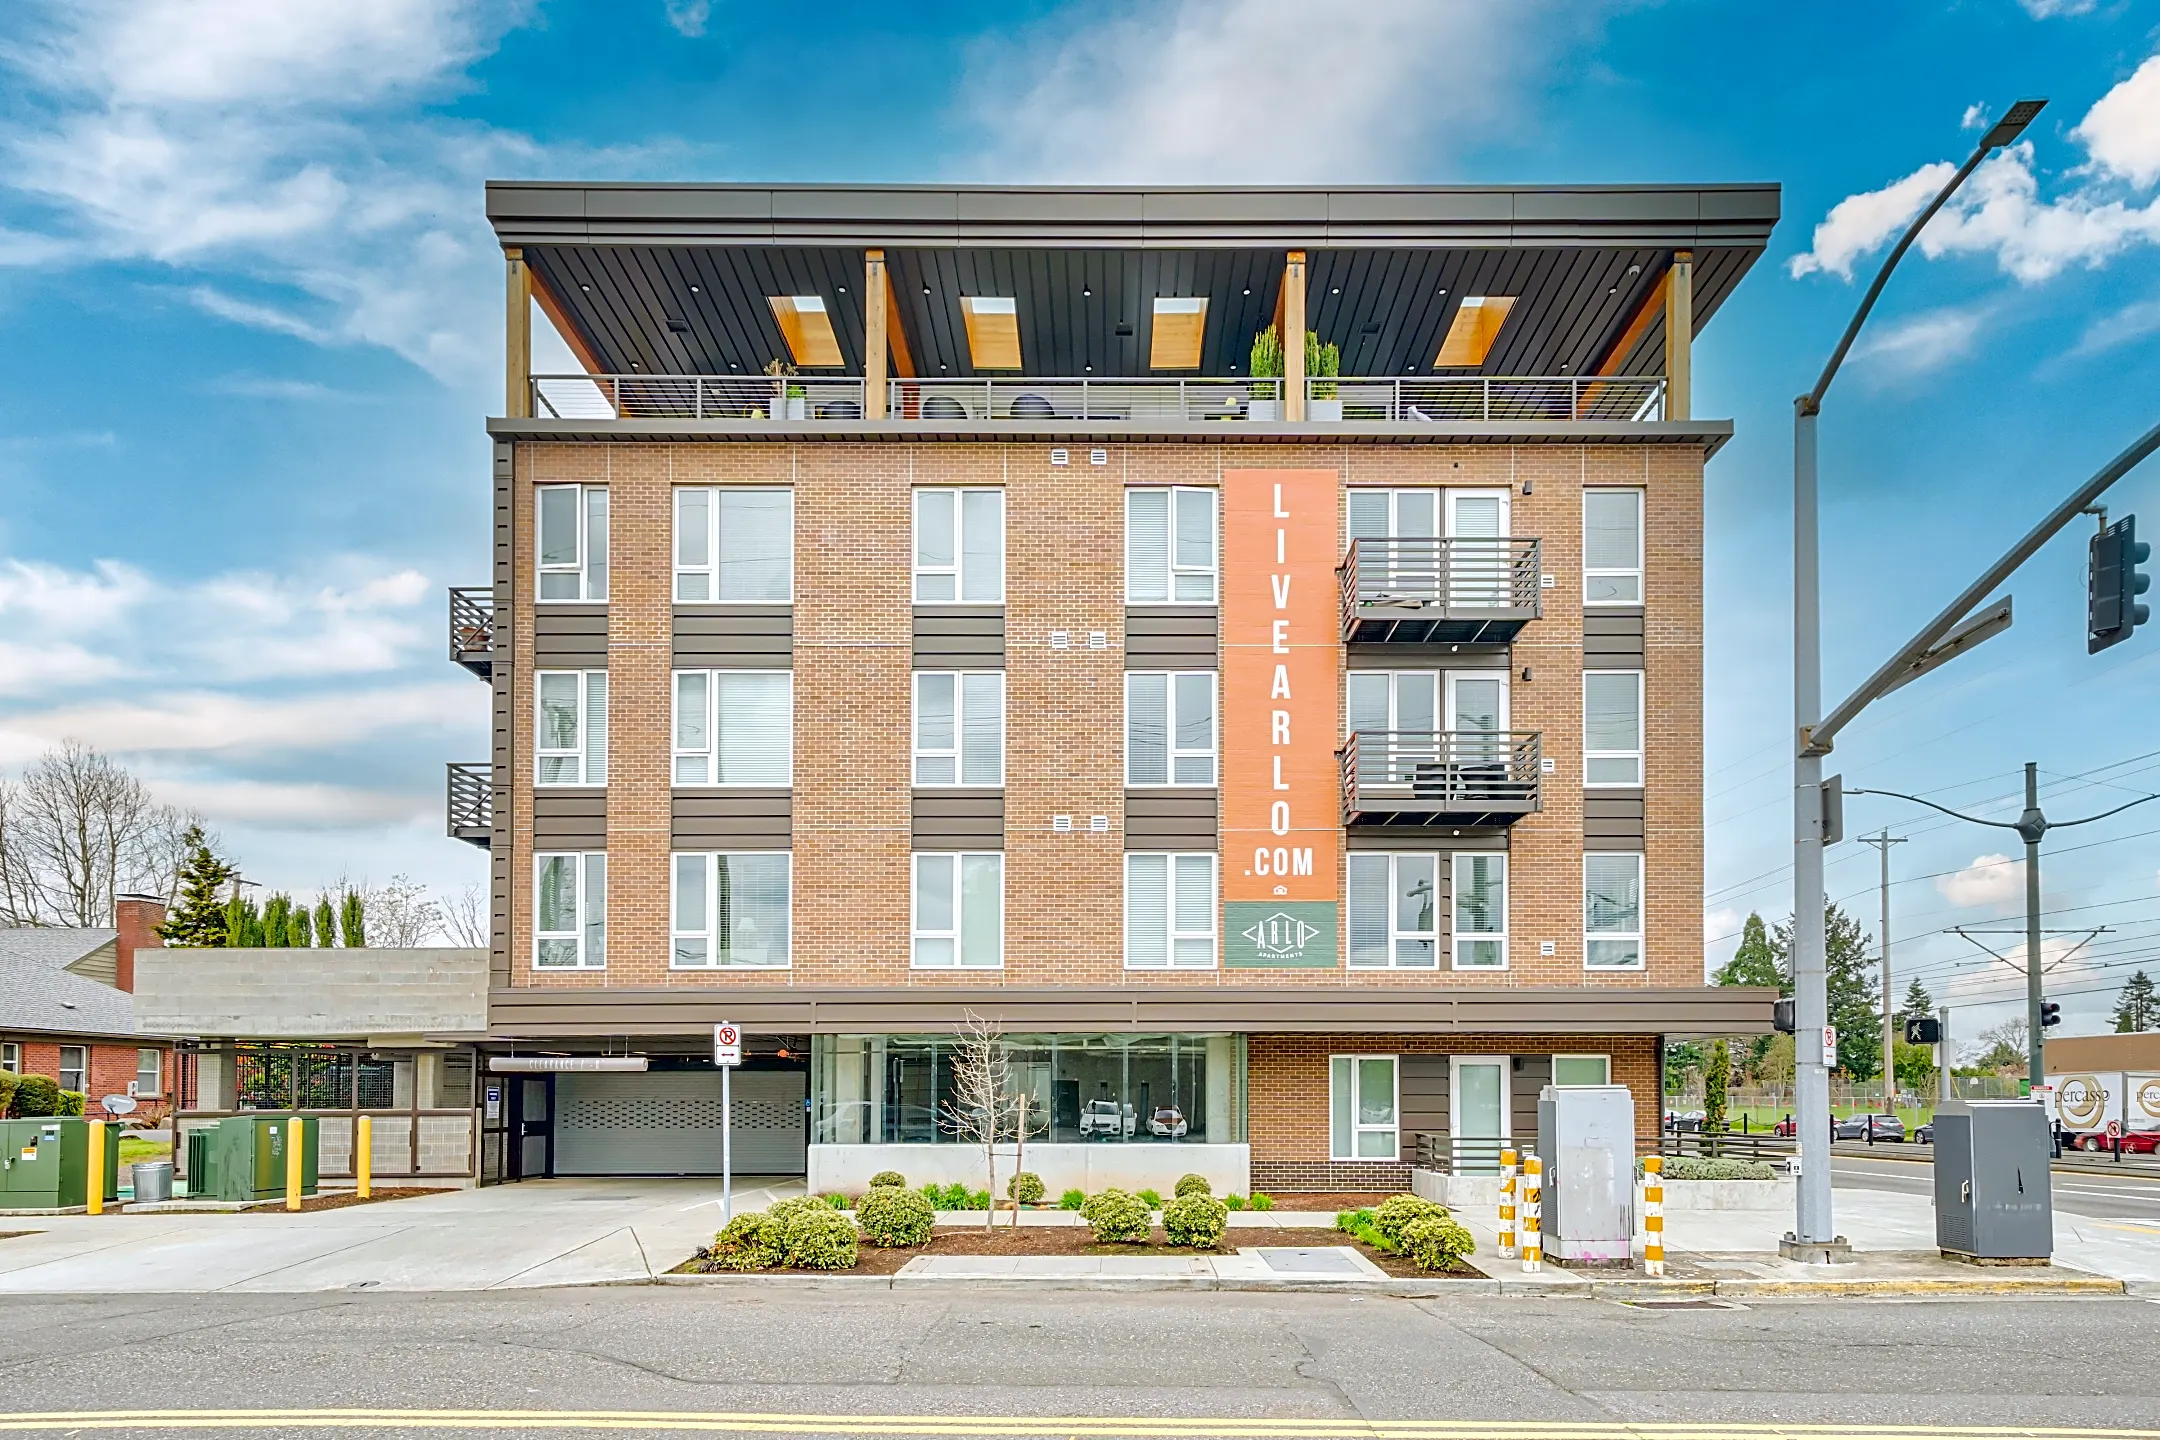 Building - ArLo Apartments - Portland, OR